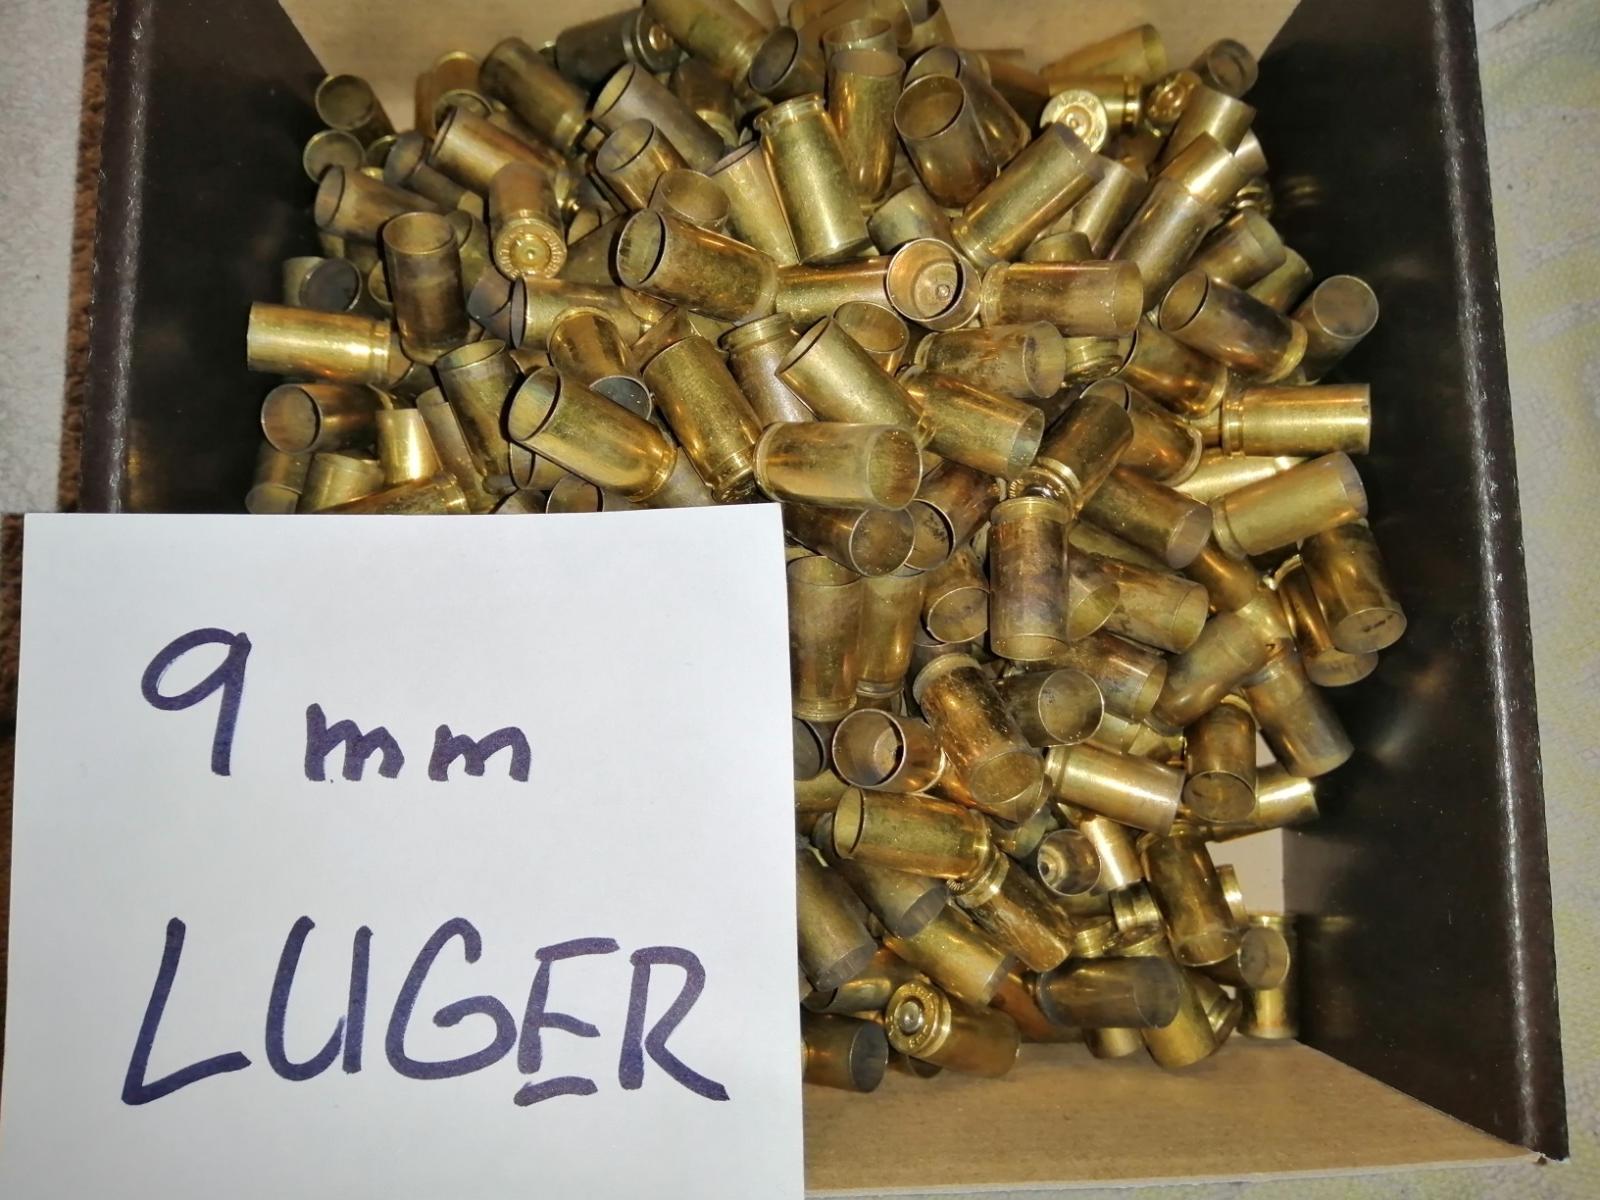 Patróny 9x19 nábojnice 9mm LUGER prebíjanie 500ks - Zberateľské zbrane